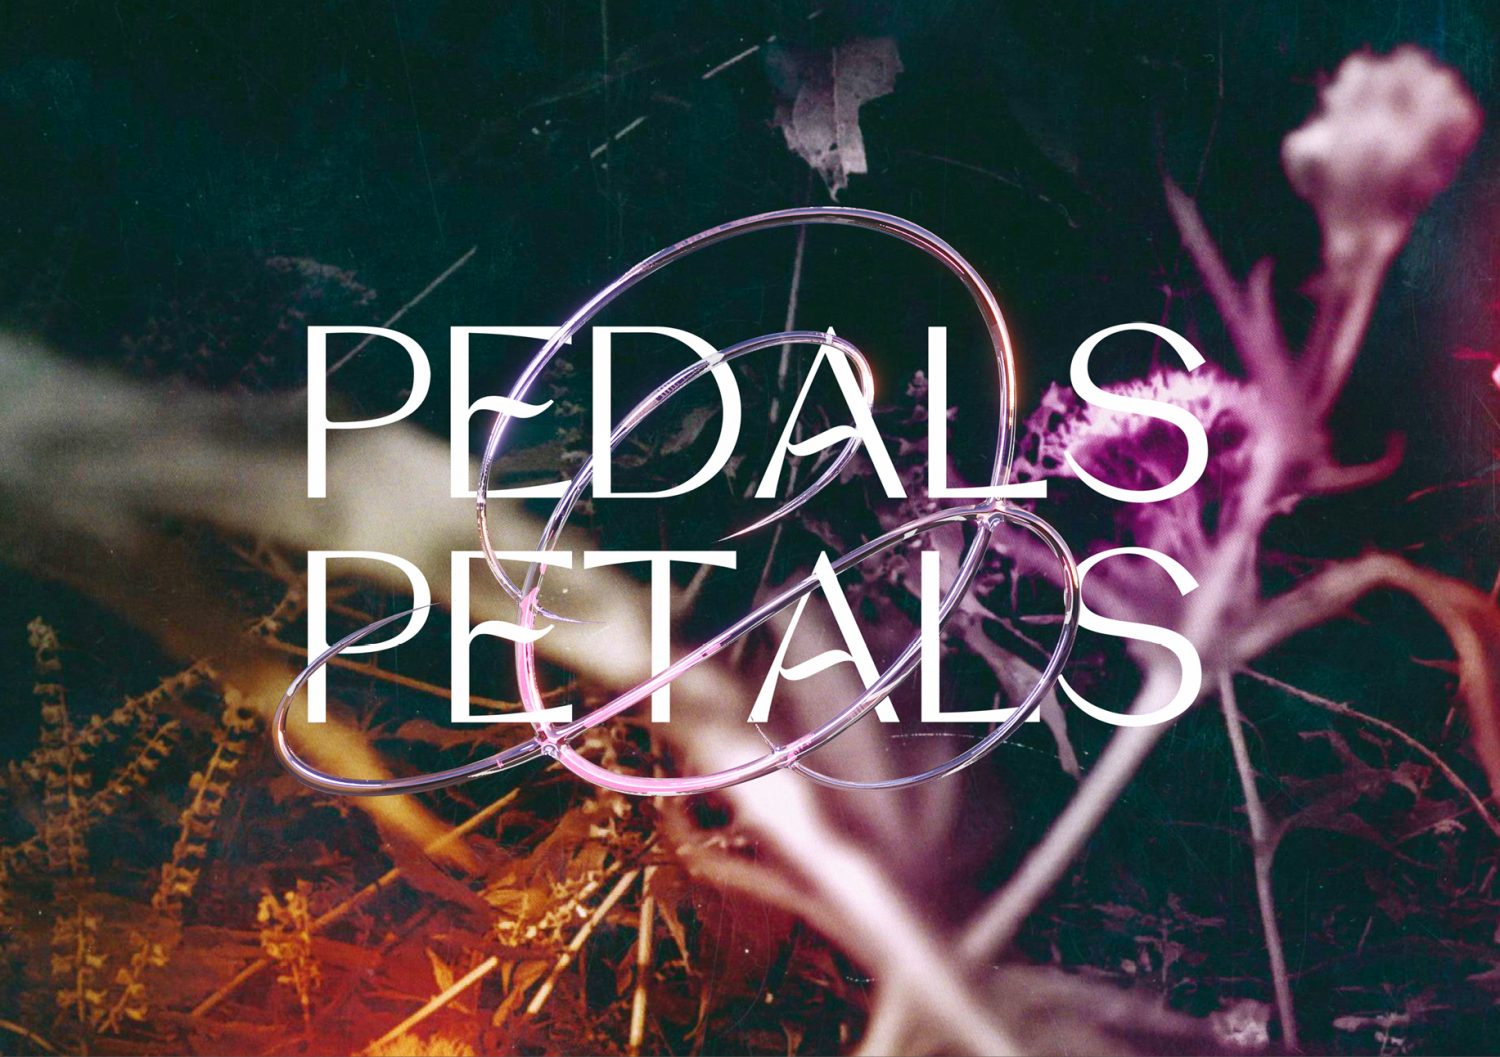 Pedals & Petals Call for Creatives